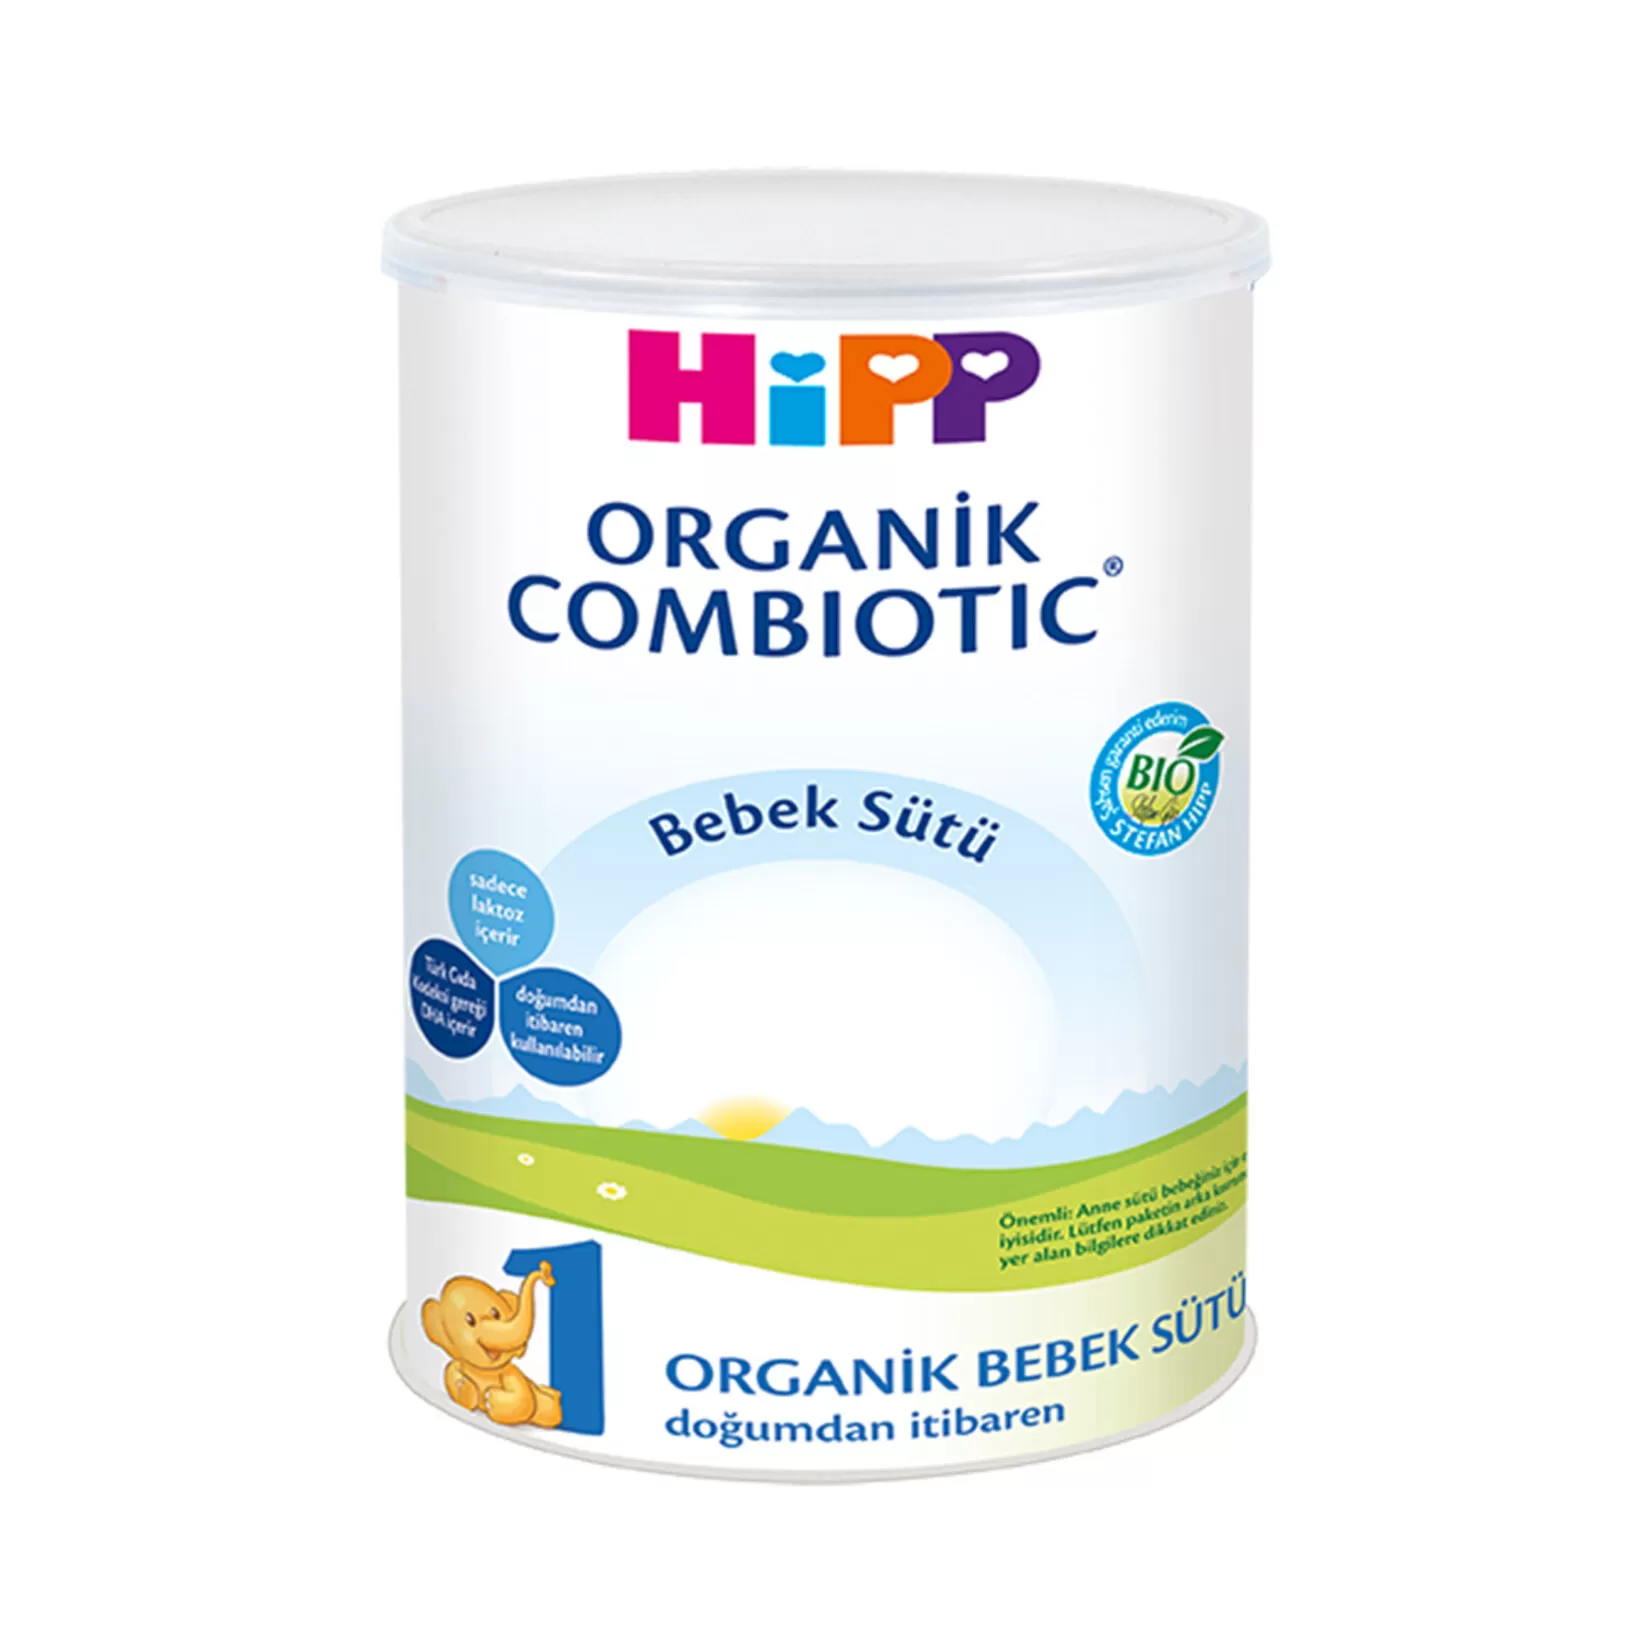 Hipp 1 Organik Combiotic Devam Sütü 350 gr 3'lü Paket